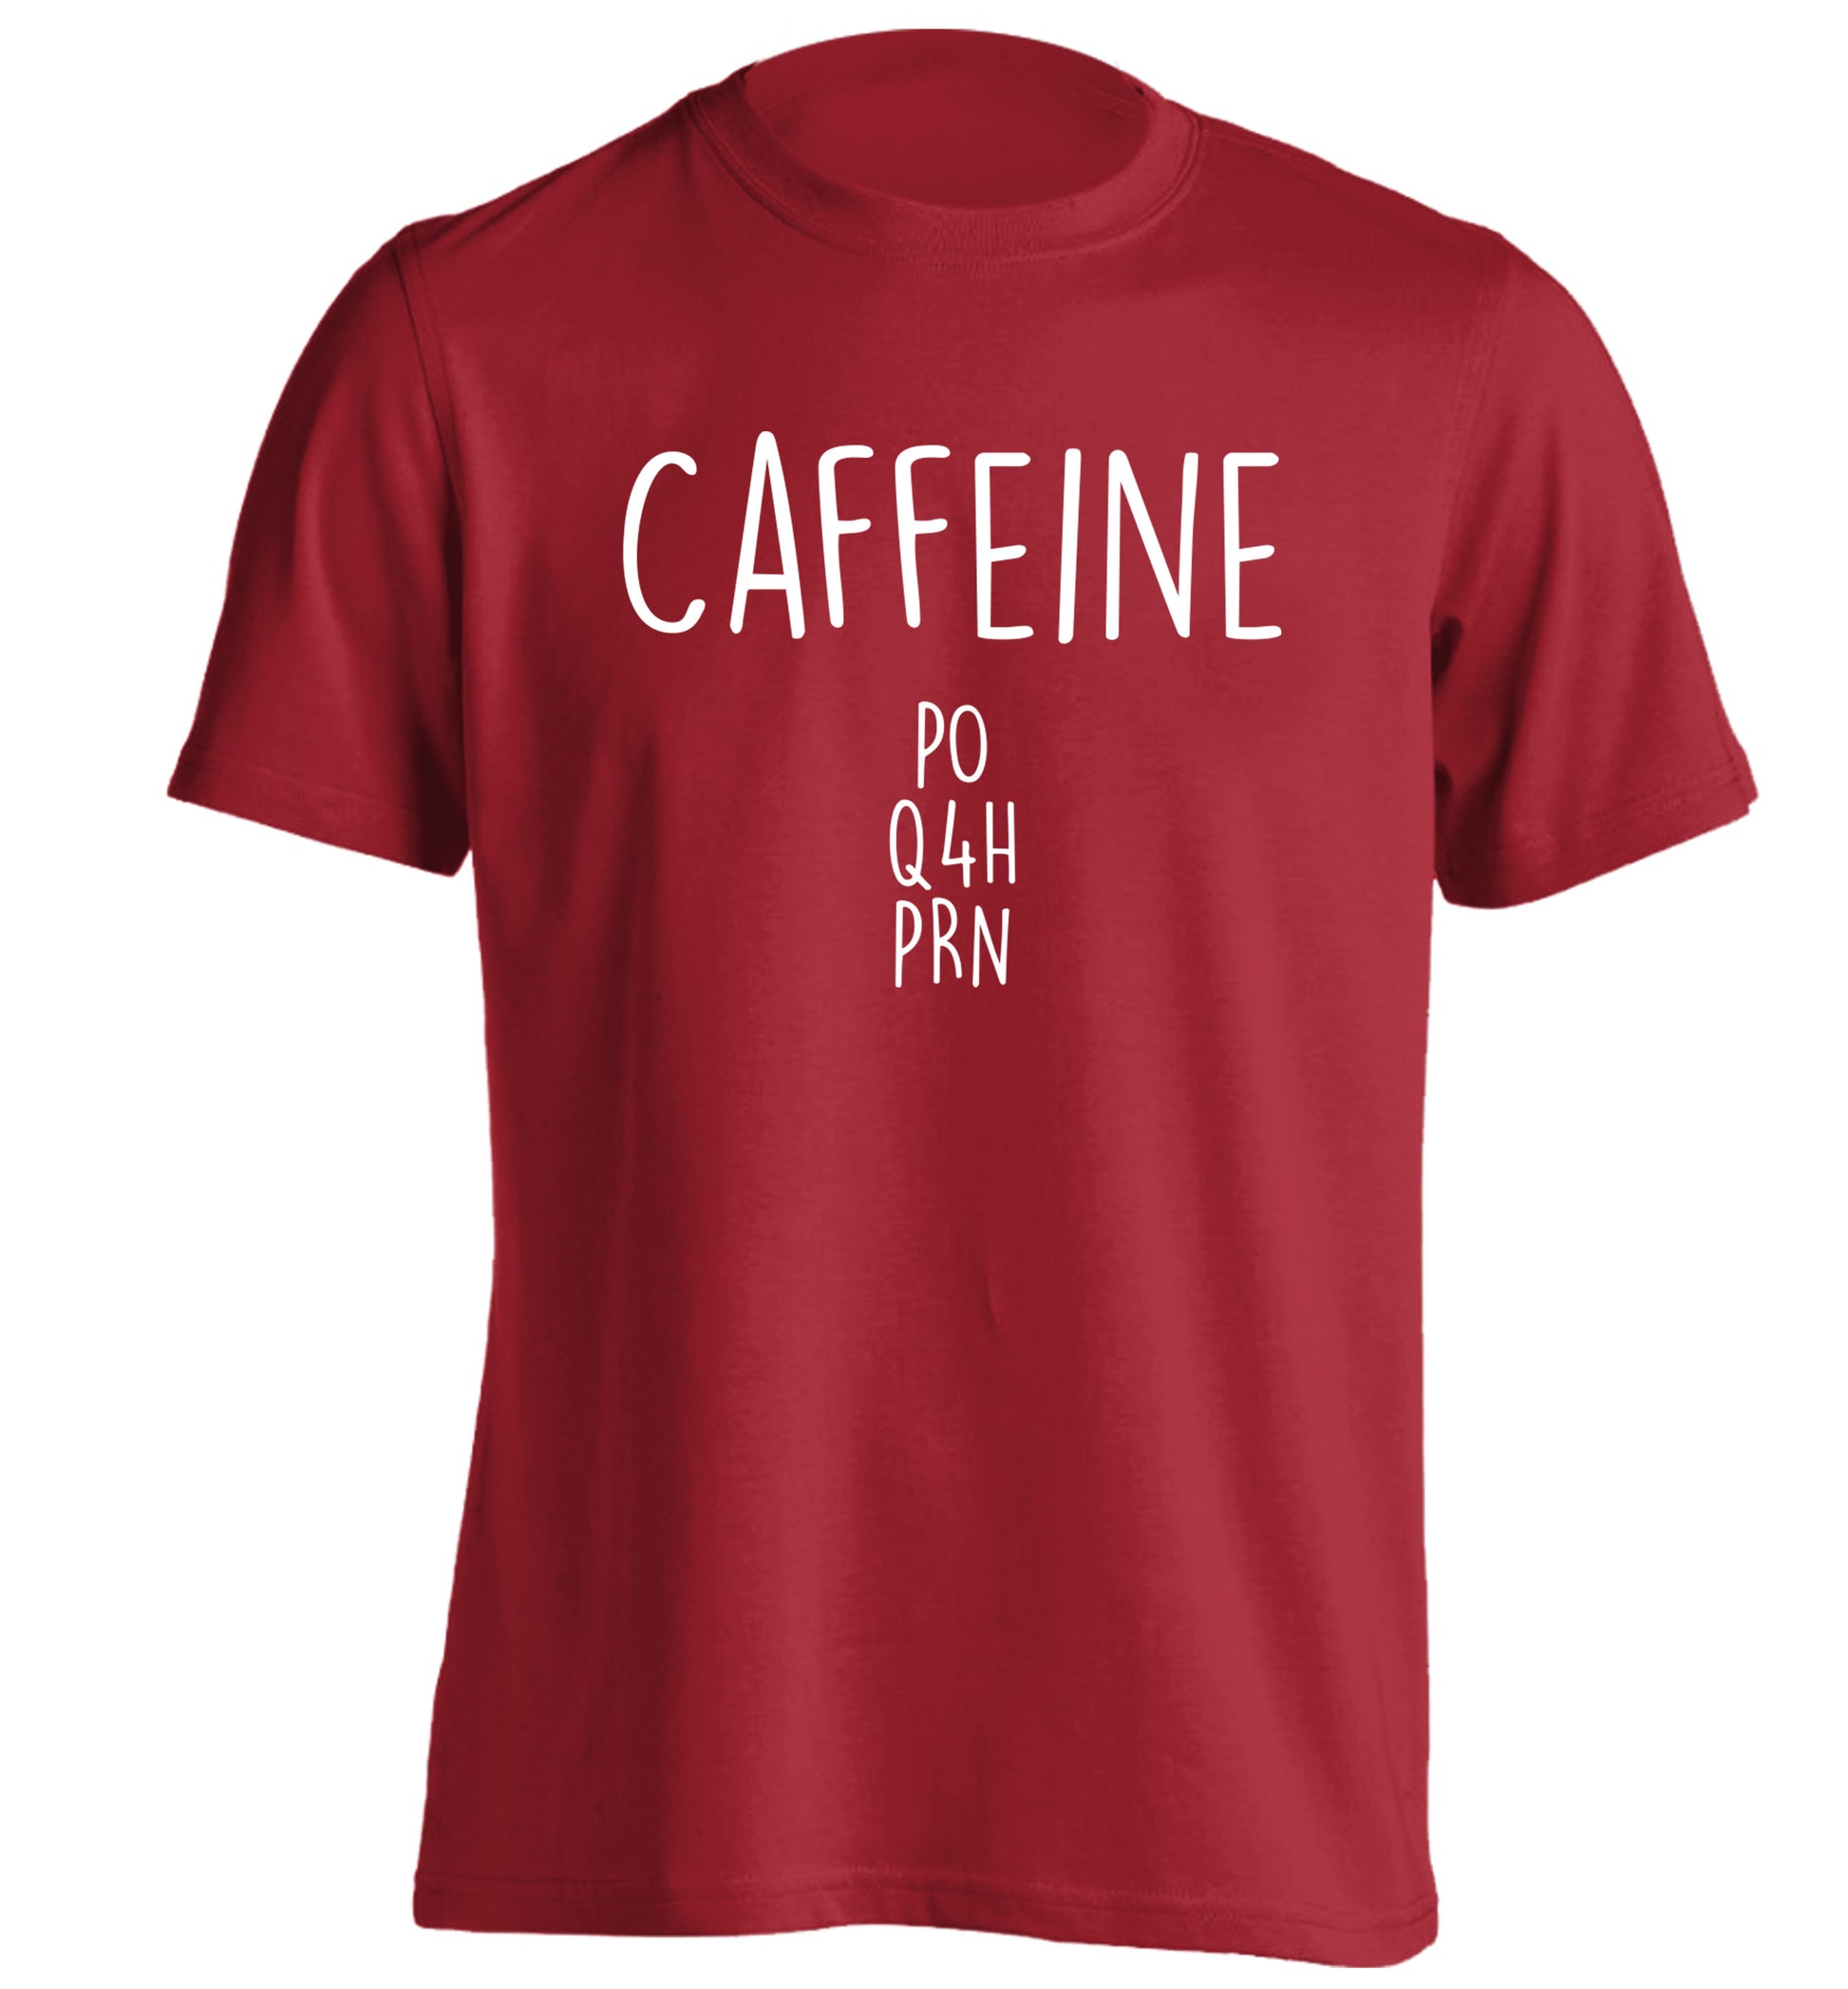 Caffeine PO Q4H PRN adults unisex red Tshirt 2XL